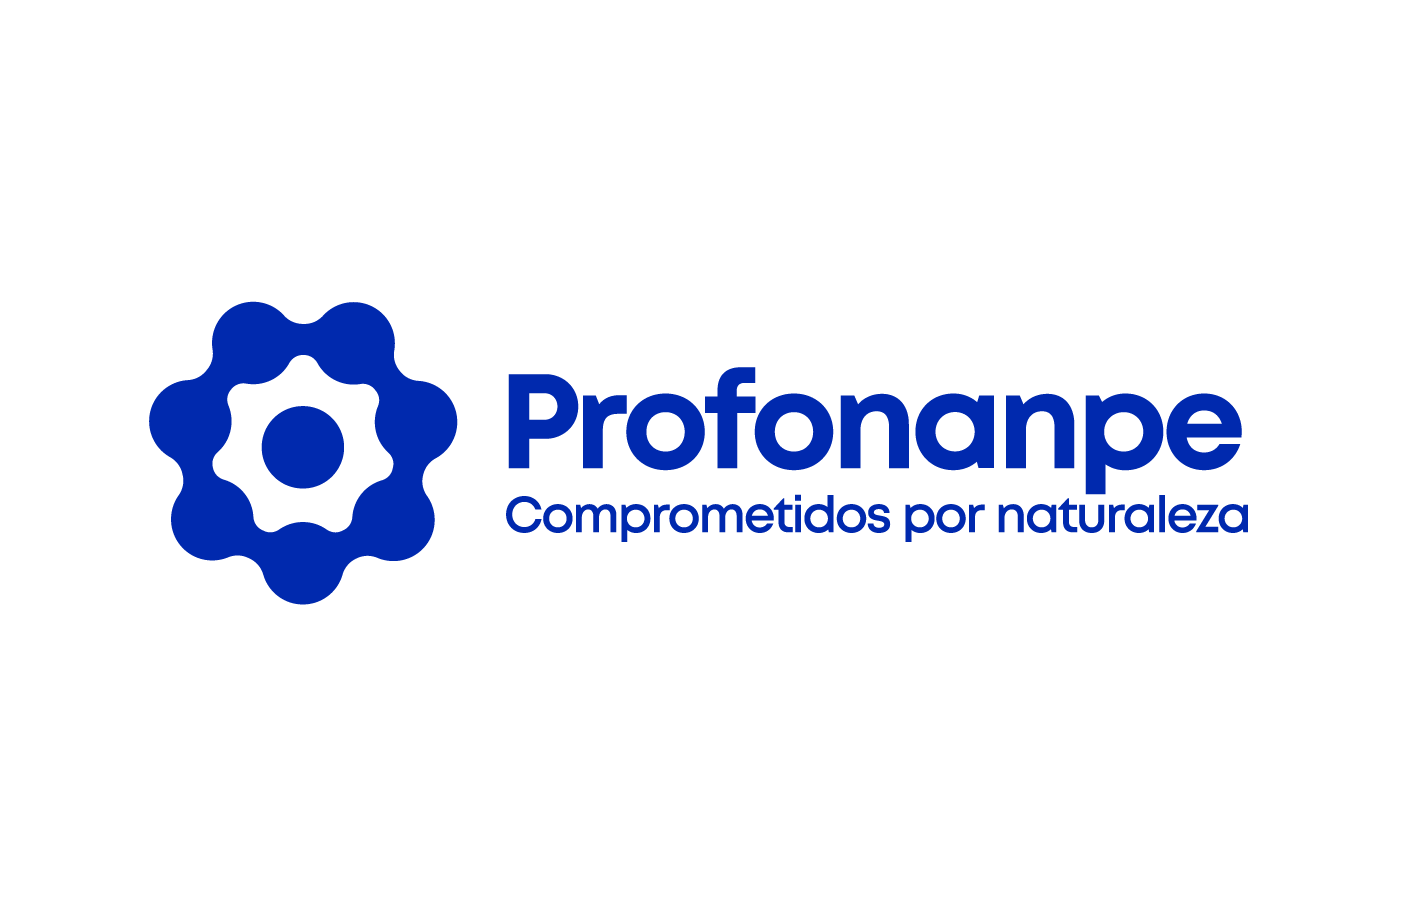 Logo Profonanpe 2020 Final_Mesa de trabajo 1